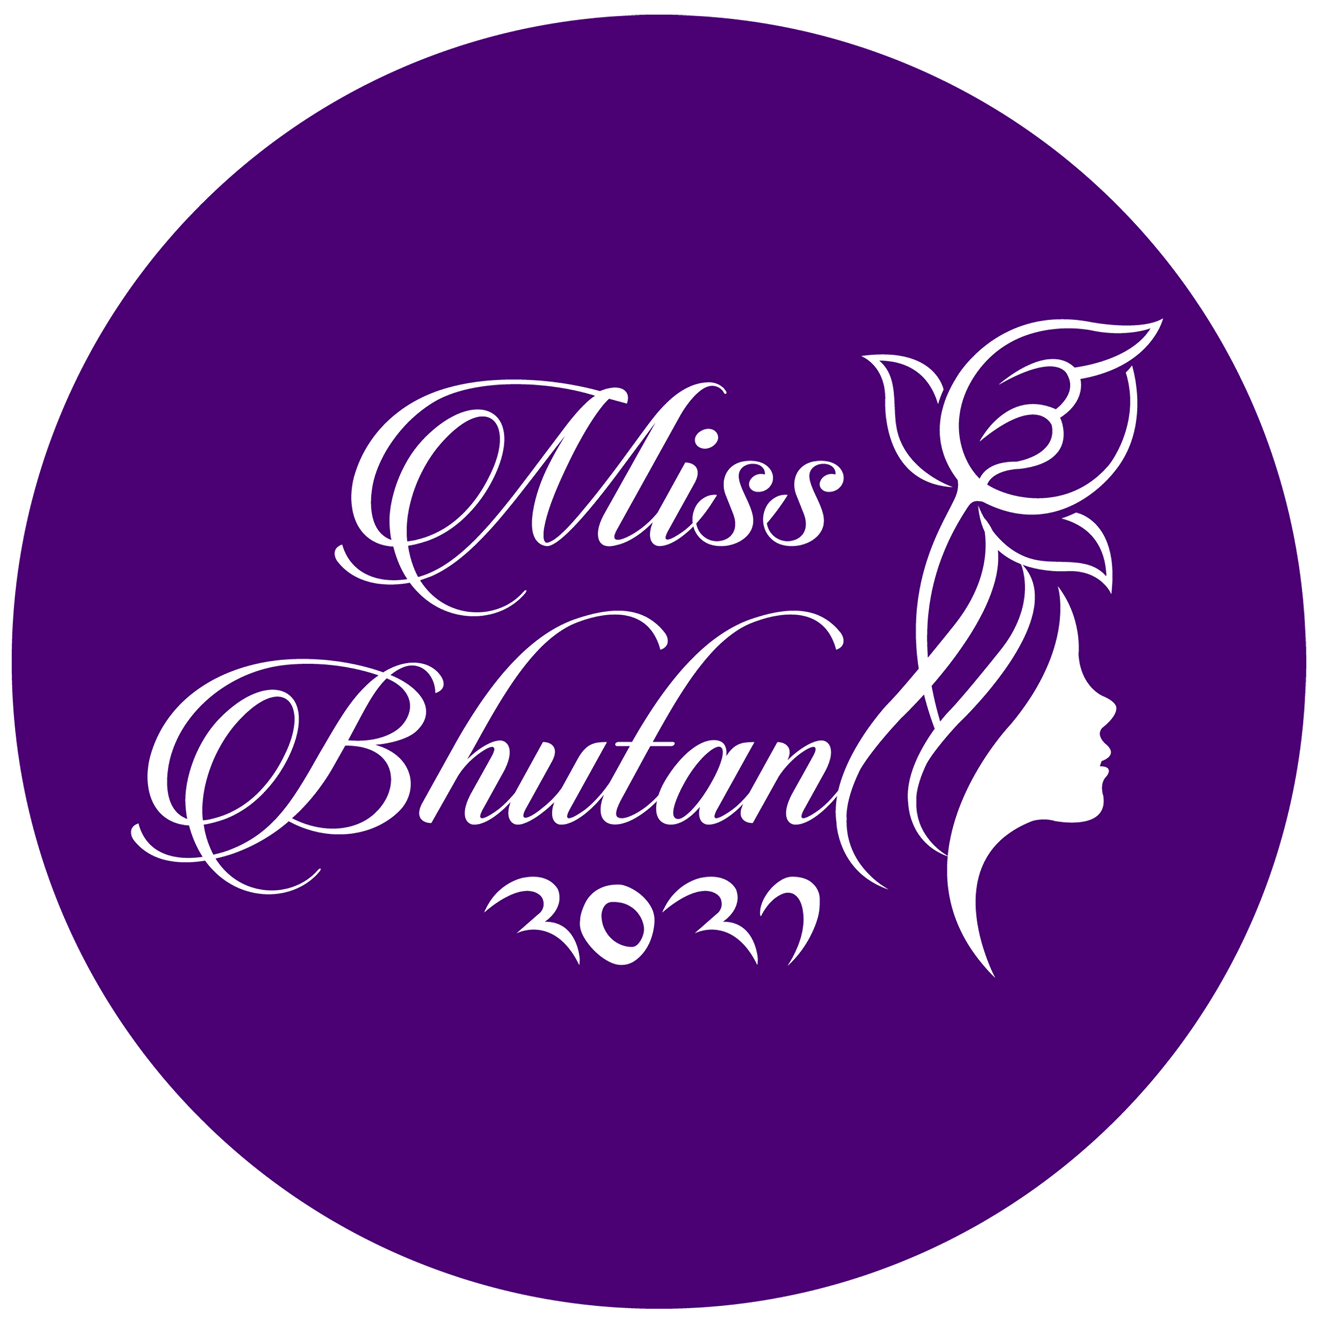 candidatas a miss bhutan 2022. final: 4 june. - Página 2 XqpgJp